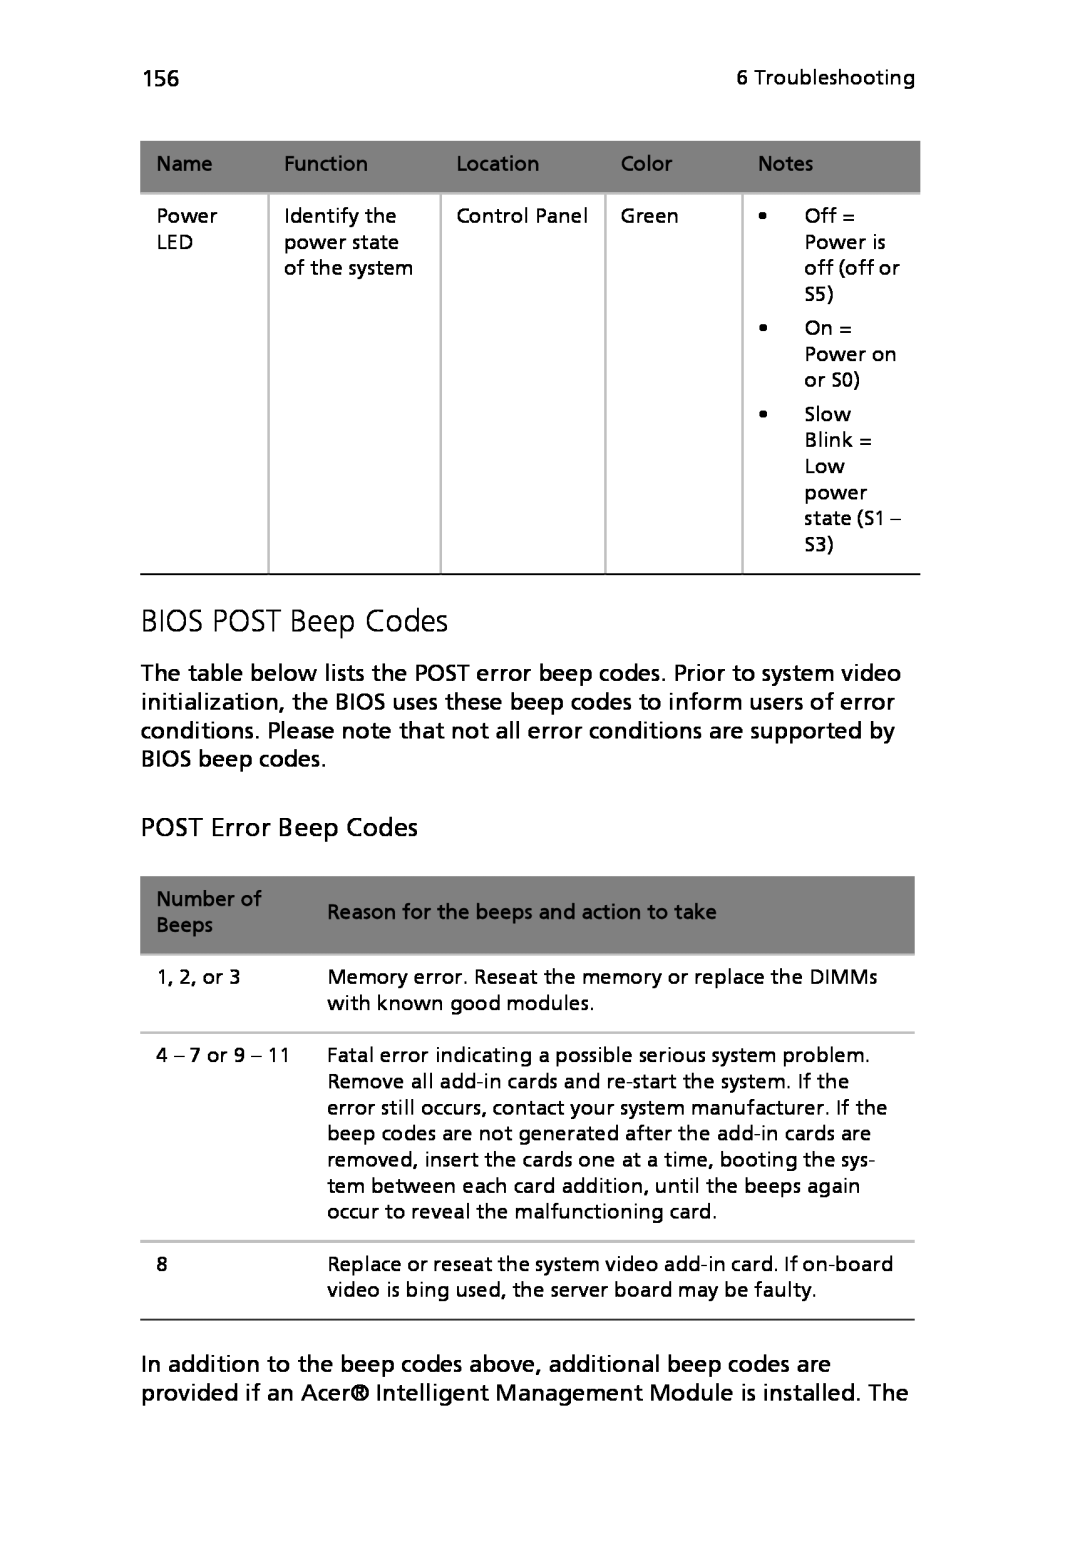 Acer Altos R710 manual BIOS POST Beep Codes, POST Error Beep Codes 